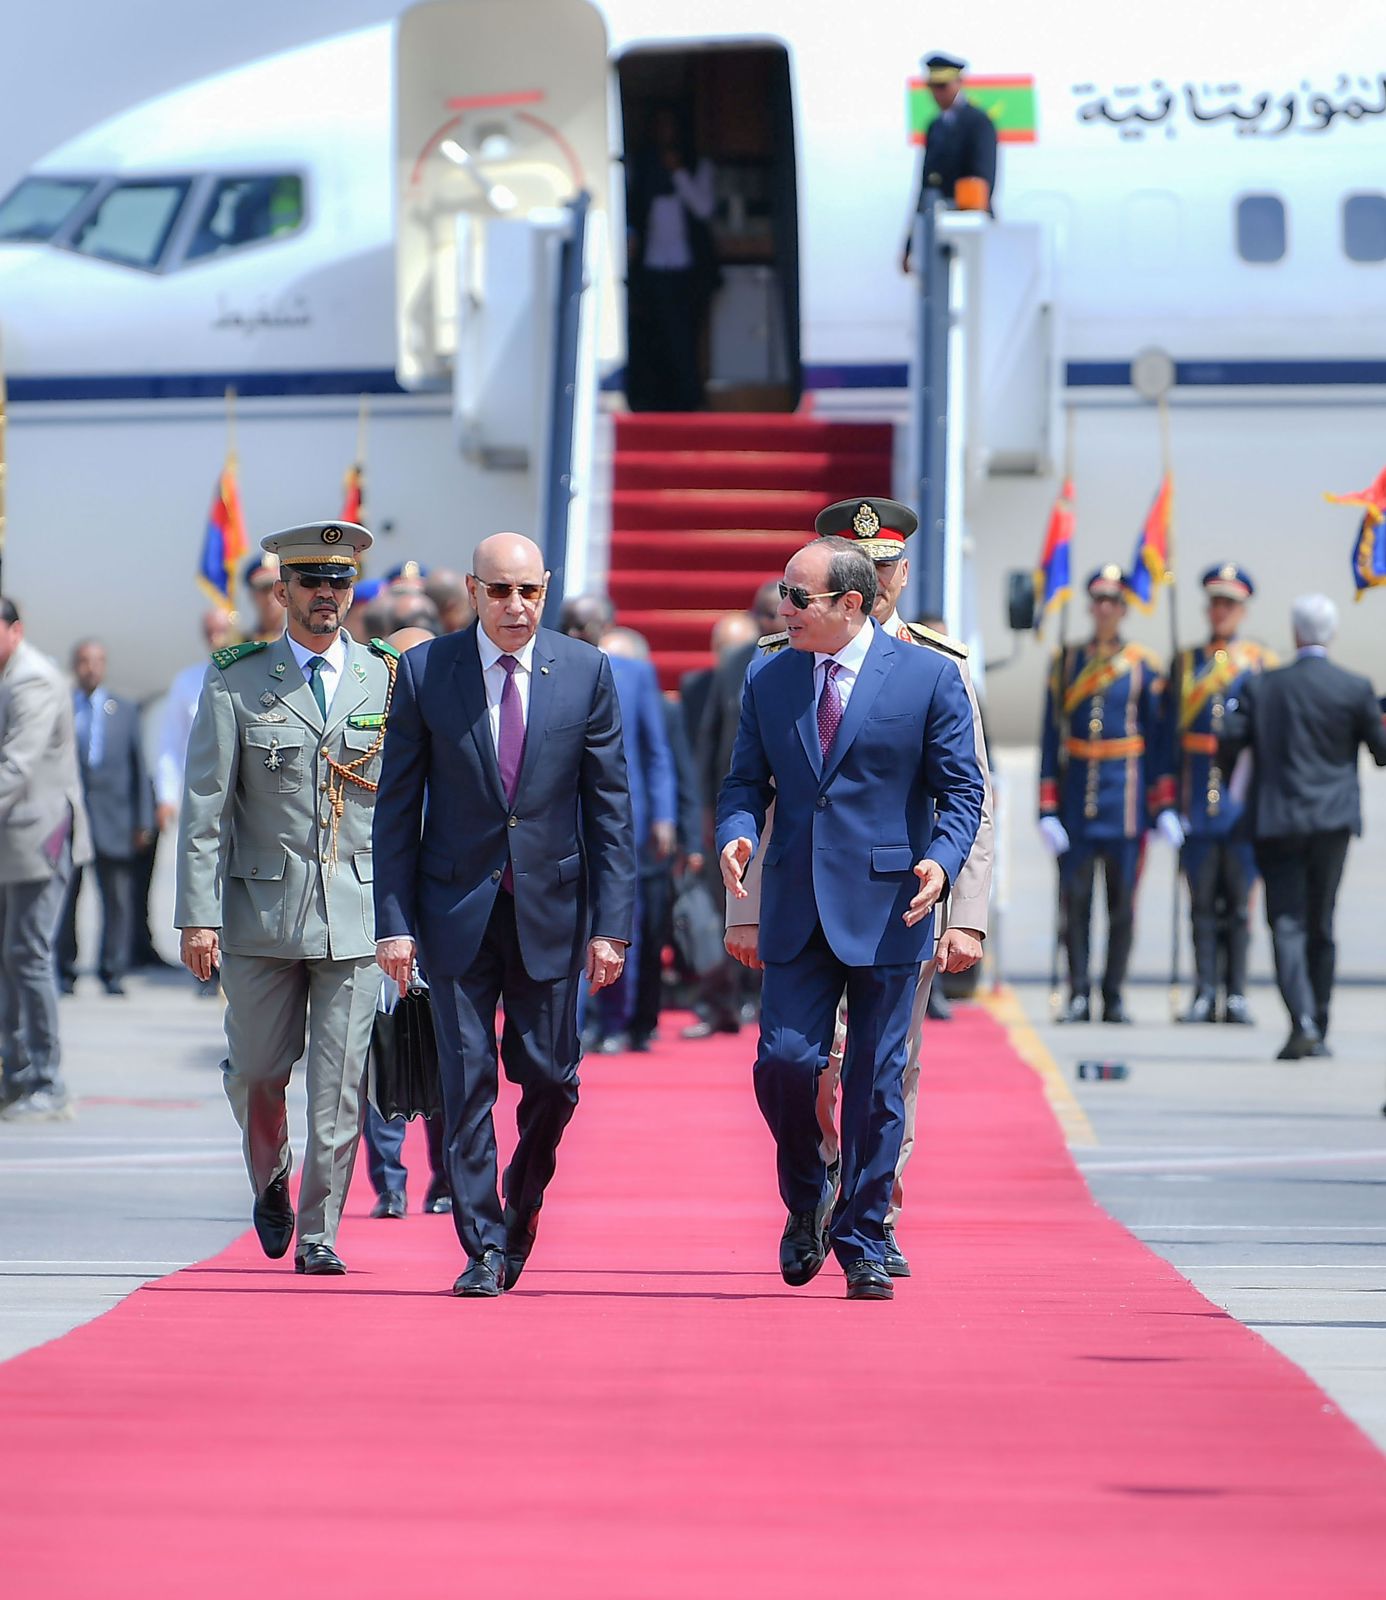  استقبال الرئيس السيسي نظيره الموريتاني